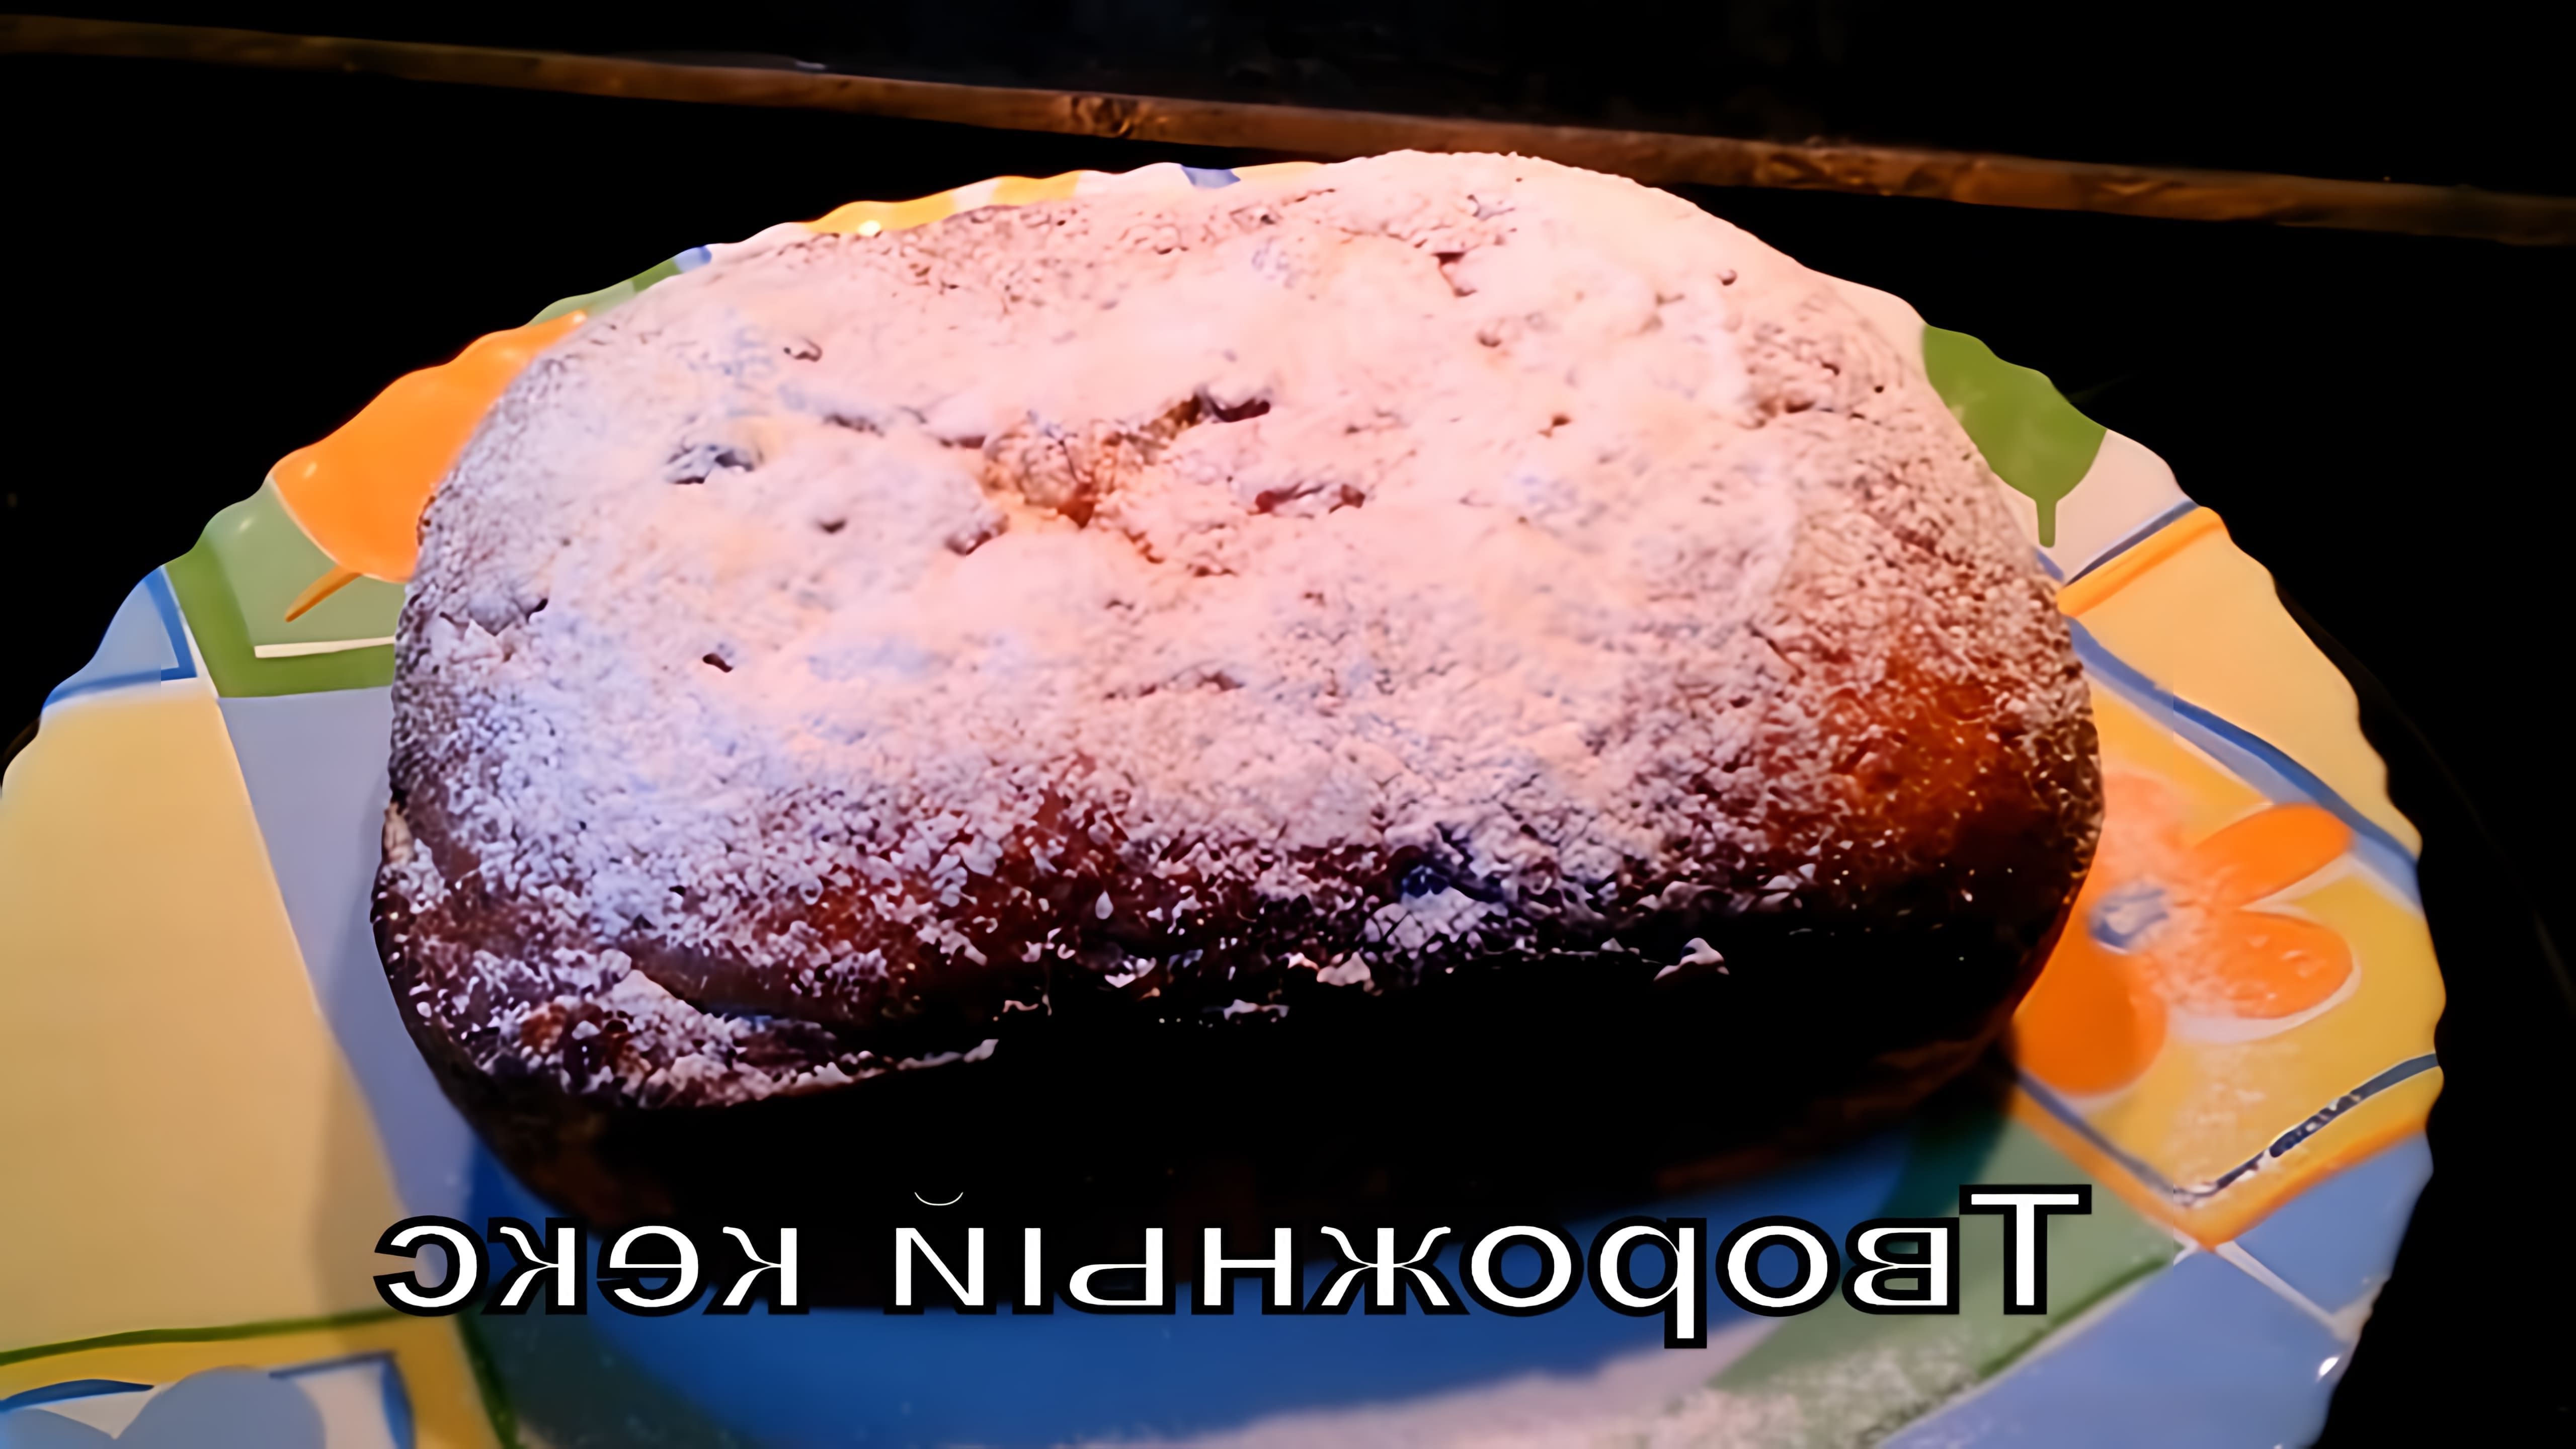 В этом видео автор проводит эксперимент по выпечке творожного кекса в хлебопечке